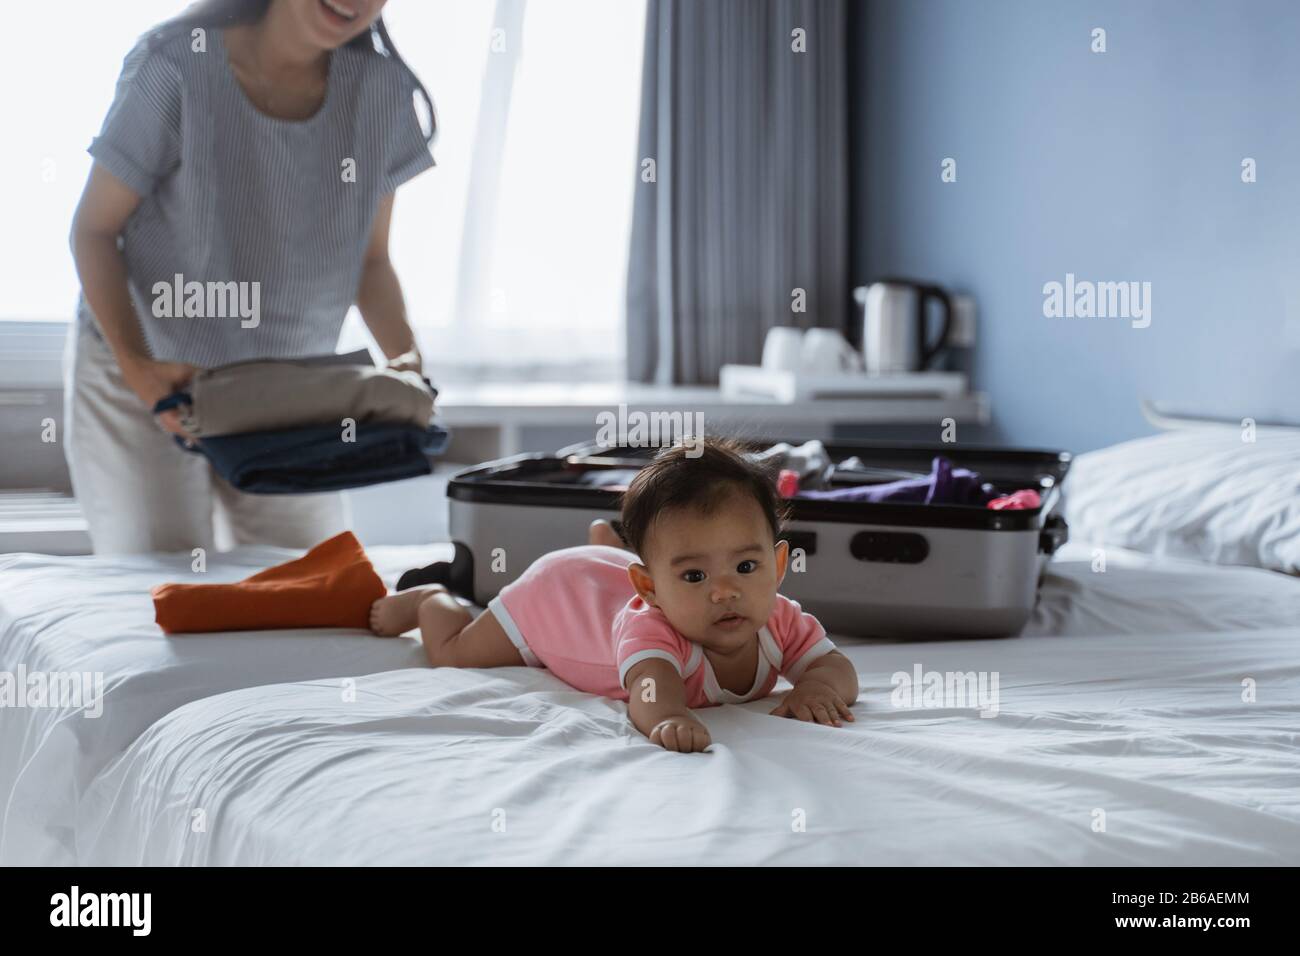 Baby, das auf dem Bett neben einem Koffer liegt und mit Kleidung gefüllt ist, die für eine Urlaubsreise vorbereitet ist Stockfoto